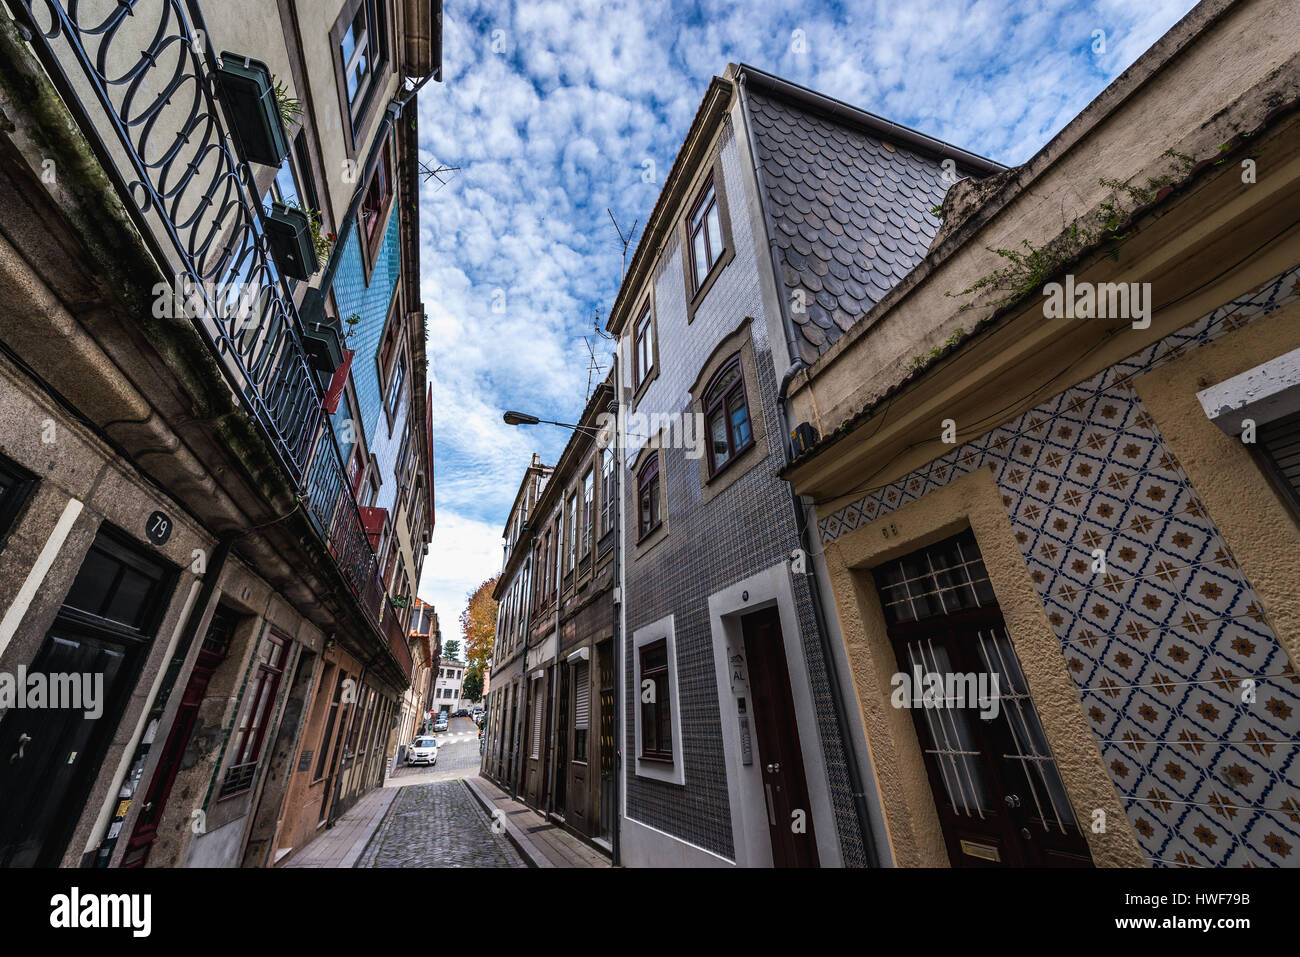 Maisons de ville avec façades en céramique ttiles sur une rue étroite Rua do Pinheiro (Pine Tree Street) dans la ville de Porto sur la péninsule ibérique, le Portugal Banque D'Images